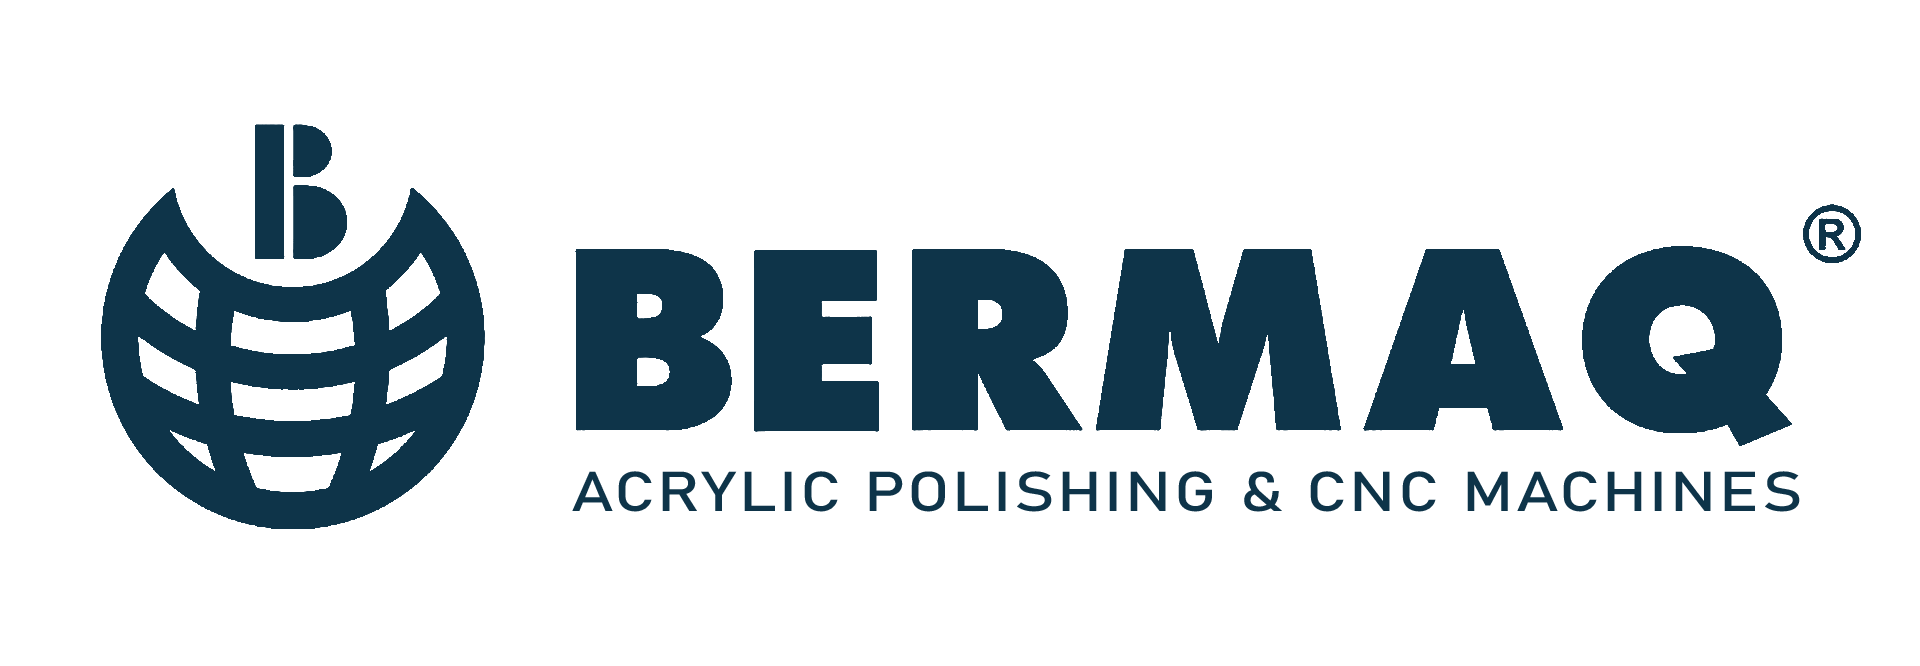 logo-bermaq-png